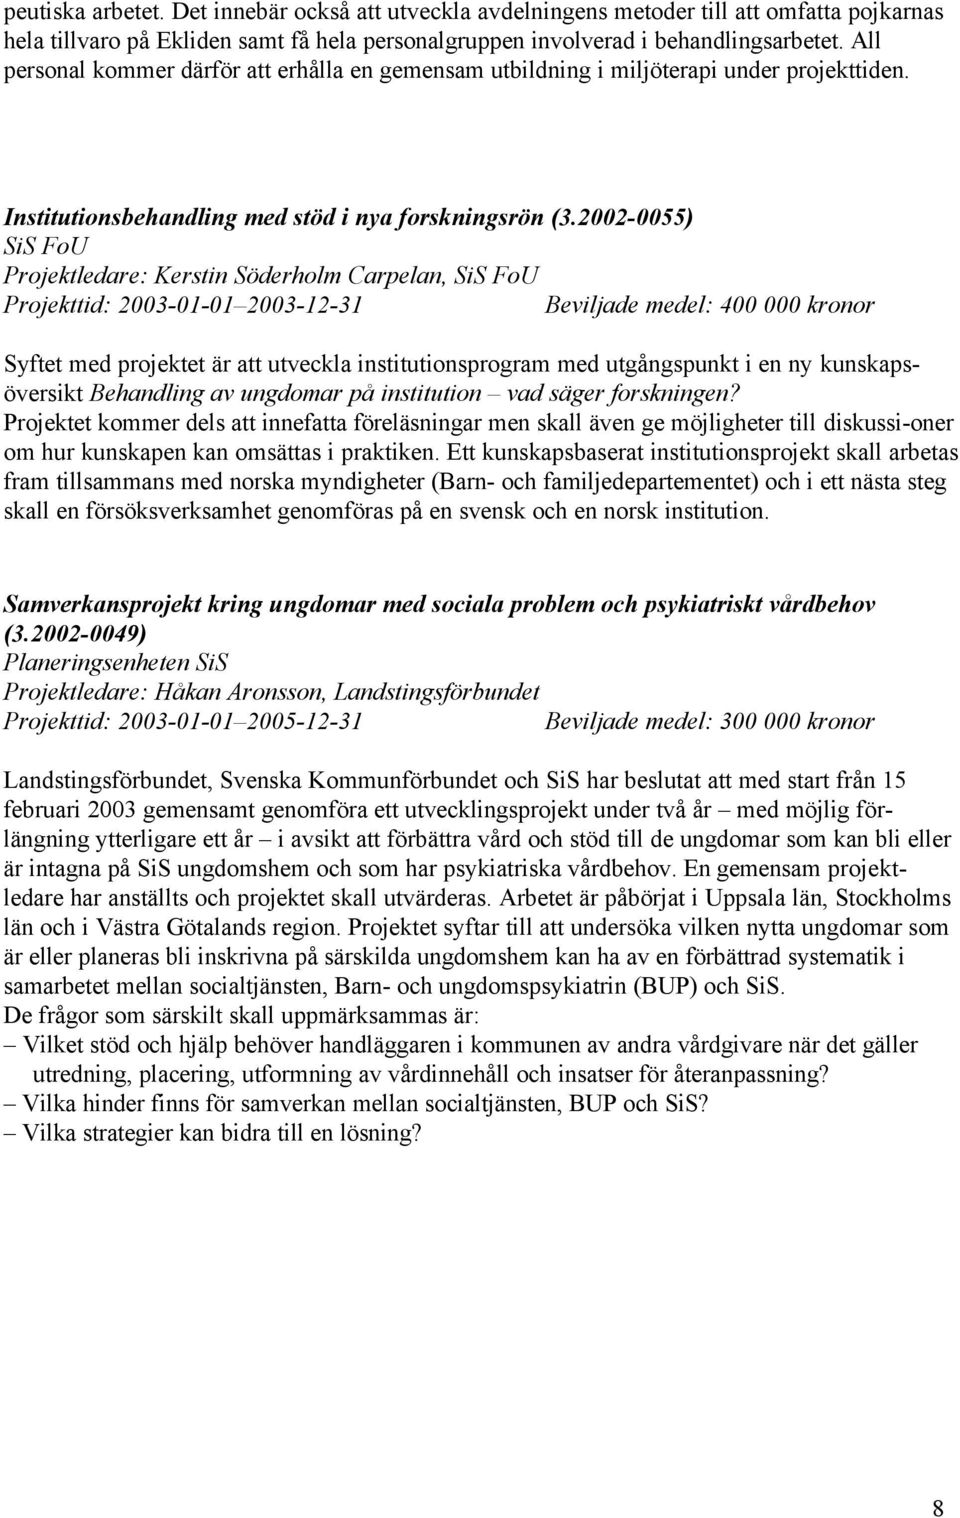 2002-0055) Projektledare: Kerstin Söderholm Carpelan, Beviljade medel: 400 000 kronor Syftet med projektet är att utveckla institutionsprogram med utgångspunkt i en ny kunskapsöversikt Behandling av